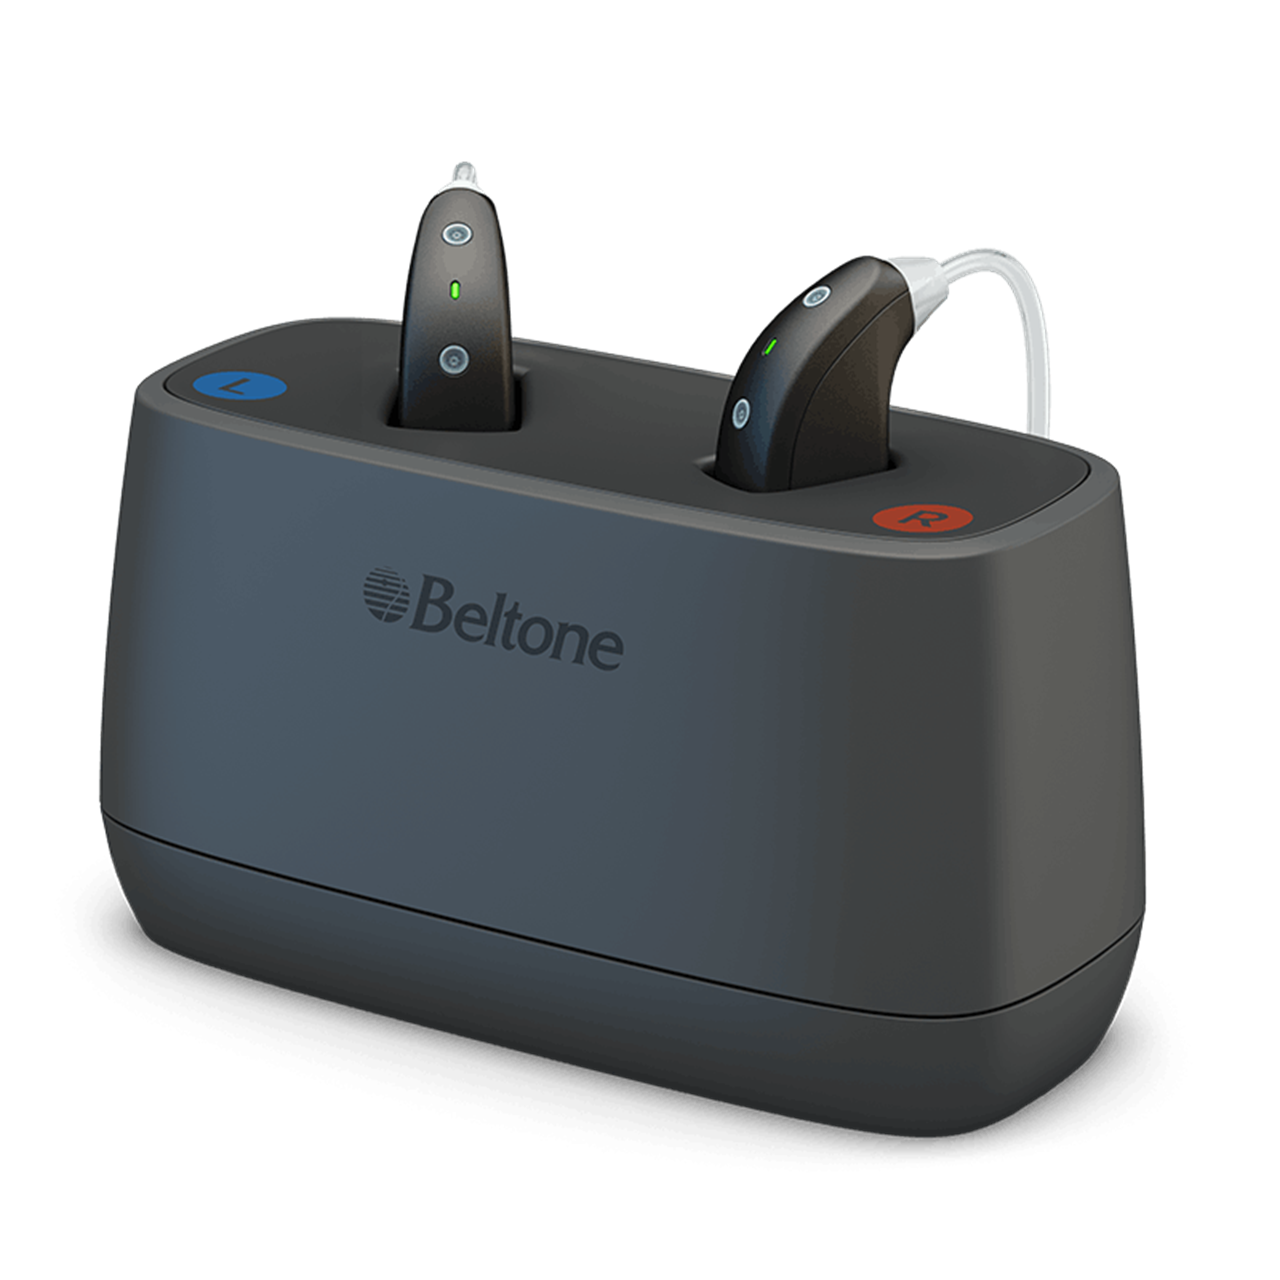 Beltone Desktop Charger